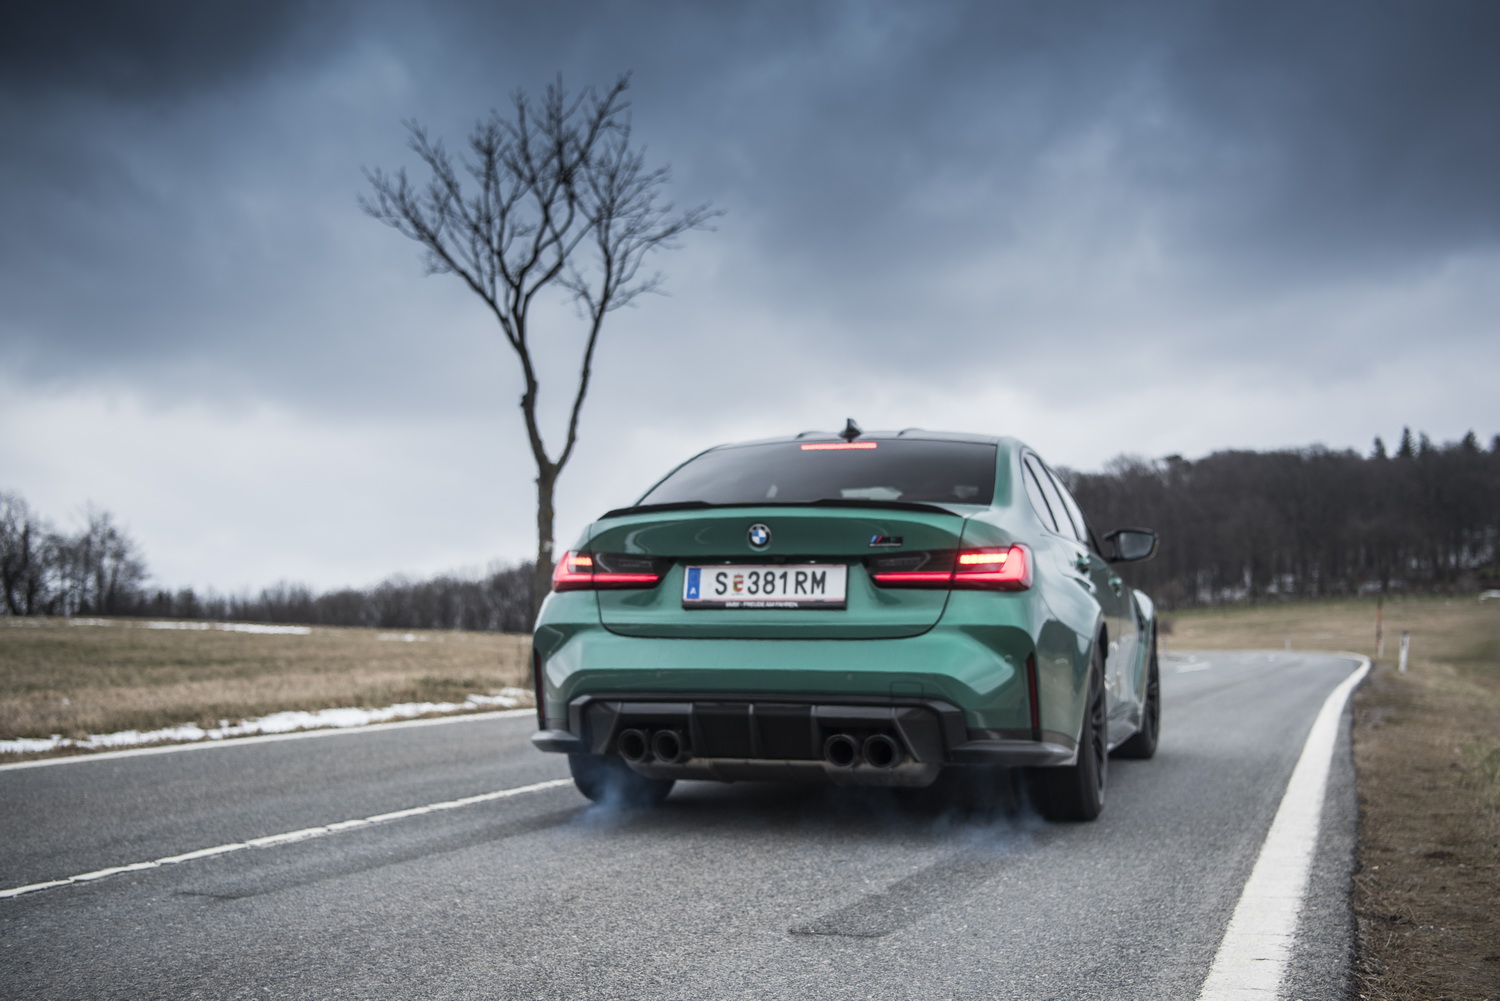 Ein grüner BMW M3 lässt auf einer Landstraße die Hinterräder durchdrehen, sodass etwas Qualm sichtbar wird.